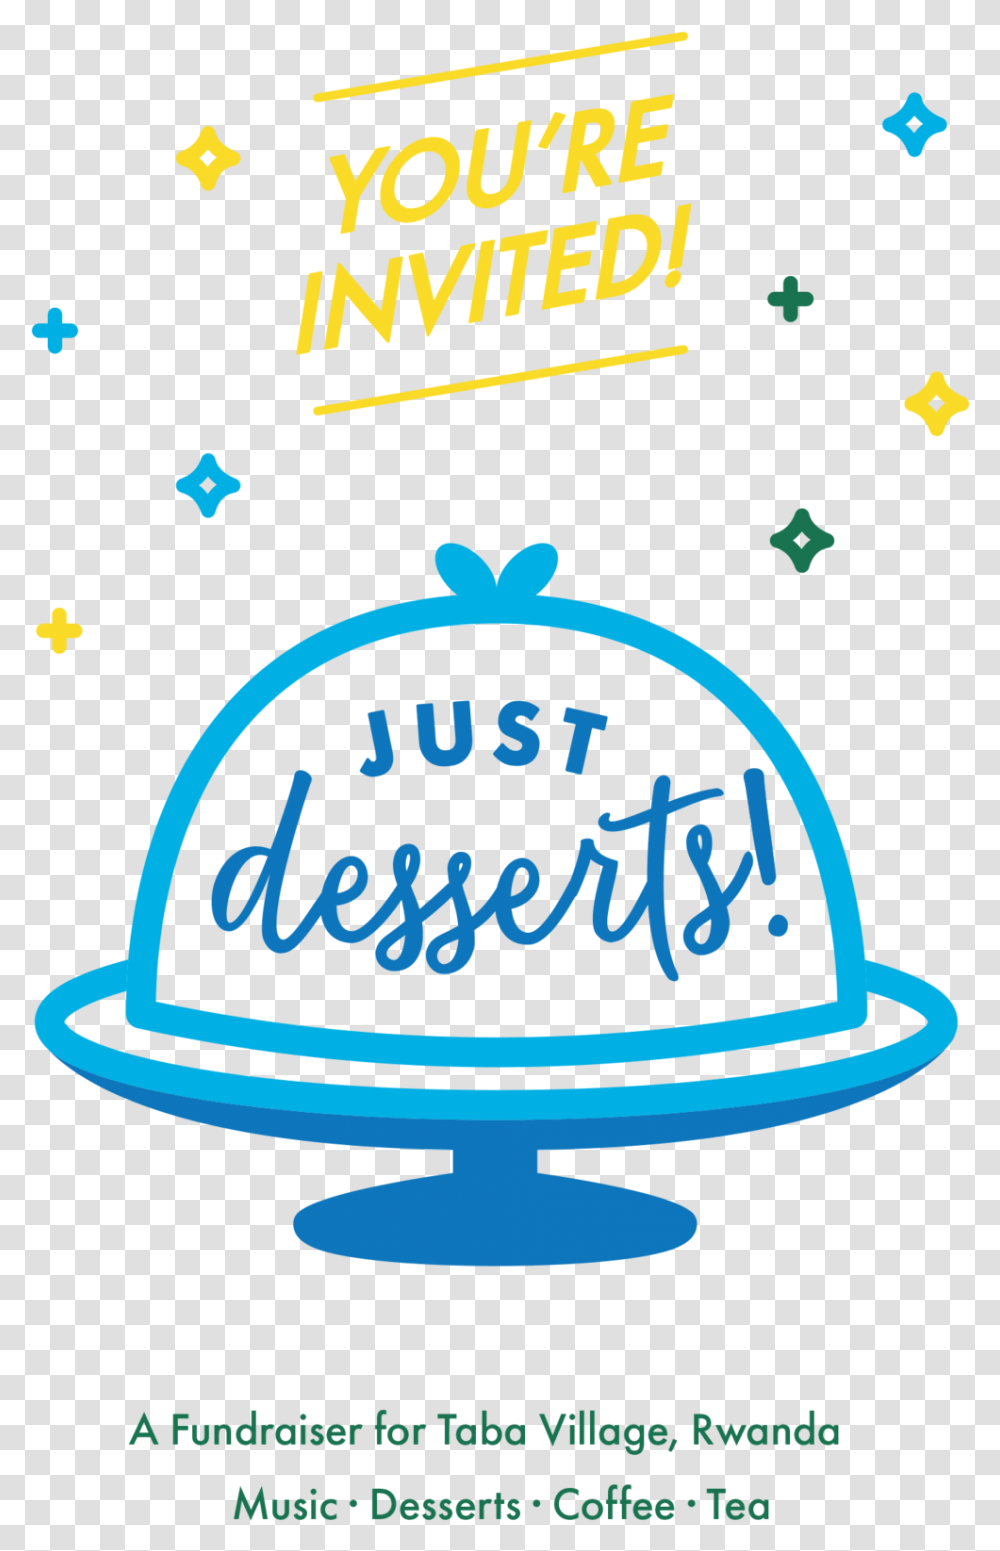 Just Desserts Invitation, Number, Poster Transparent Png